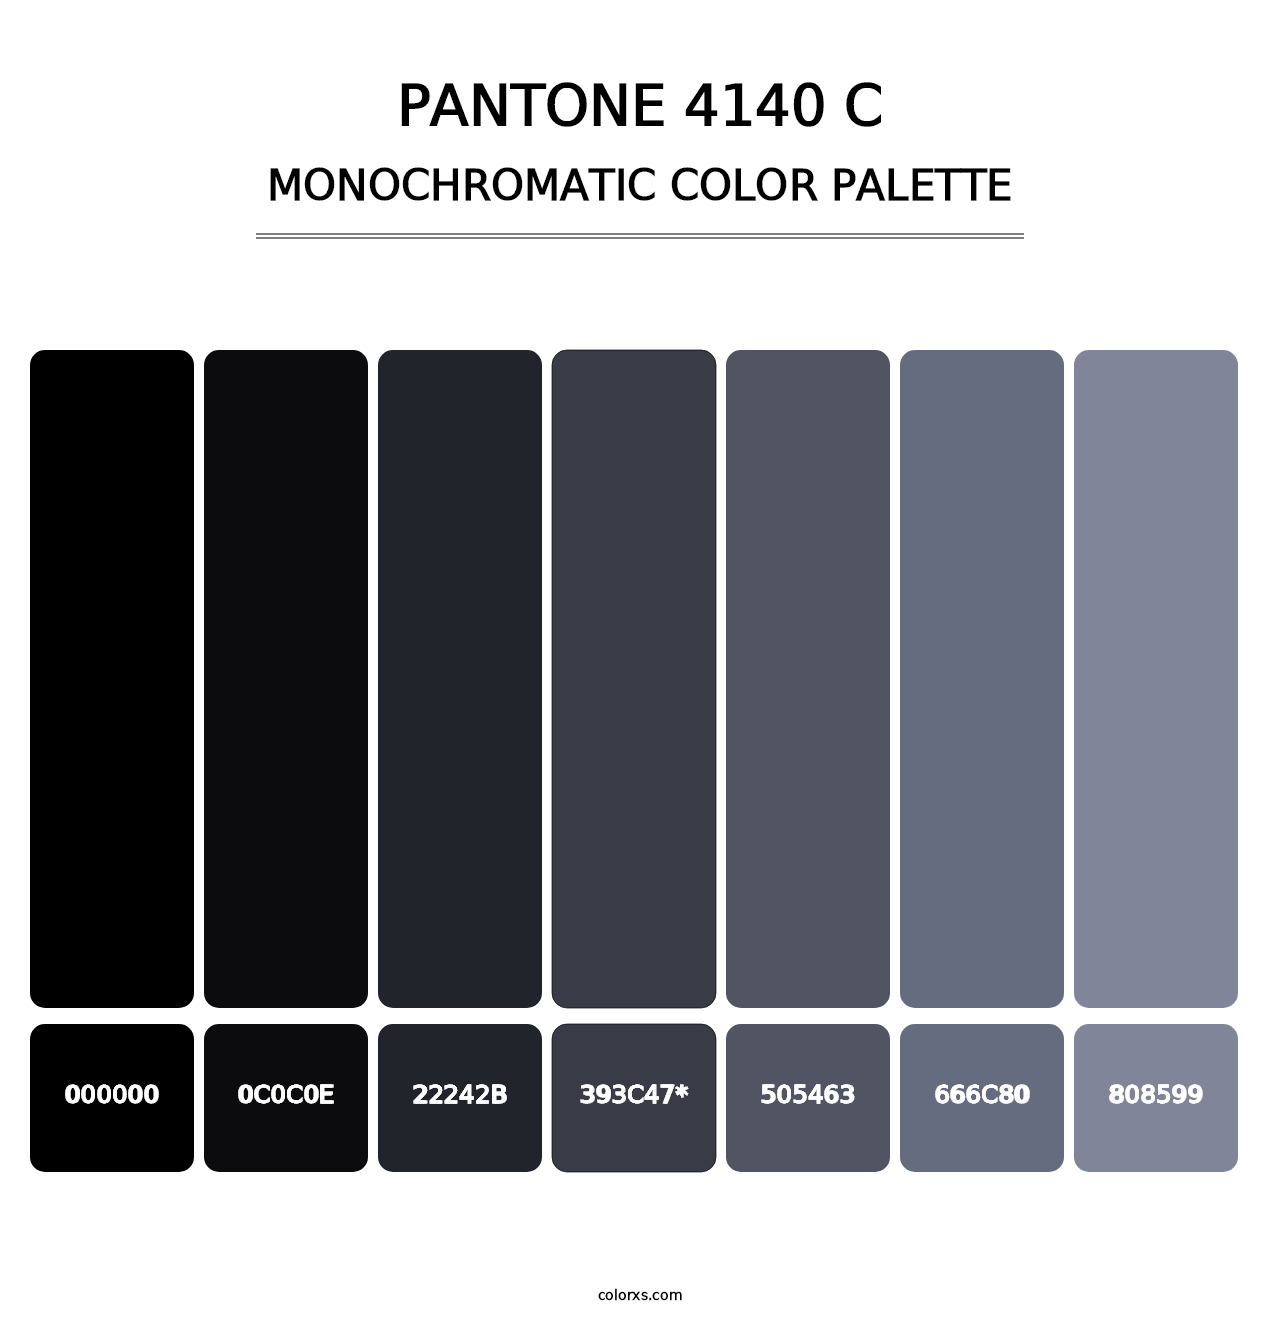 PANTONE 4140 C - Monochromatic Color Palette